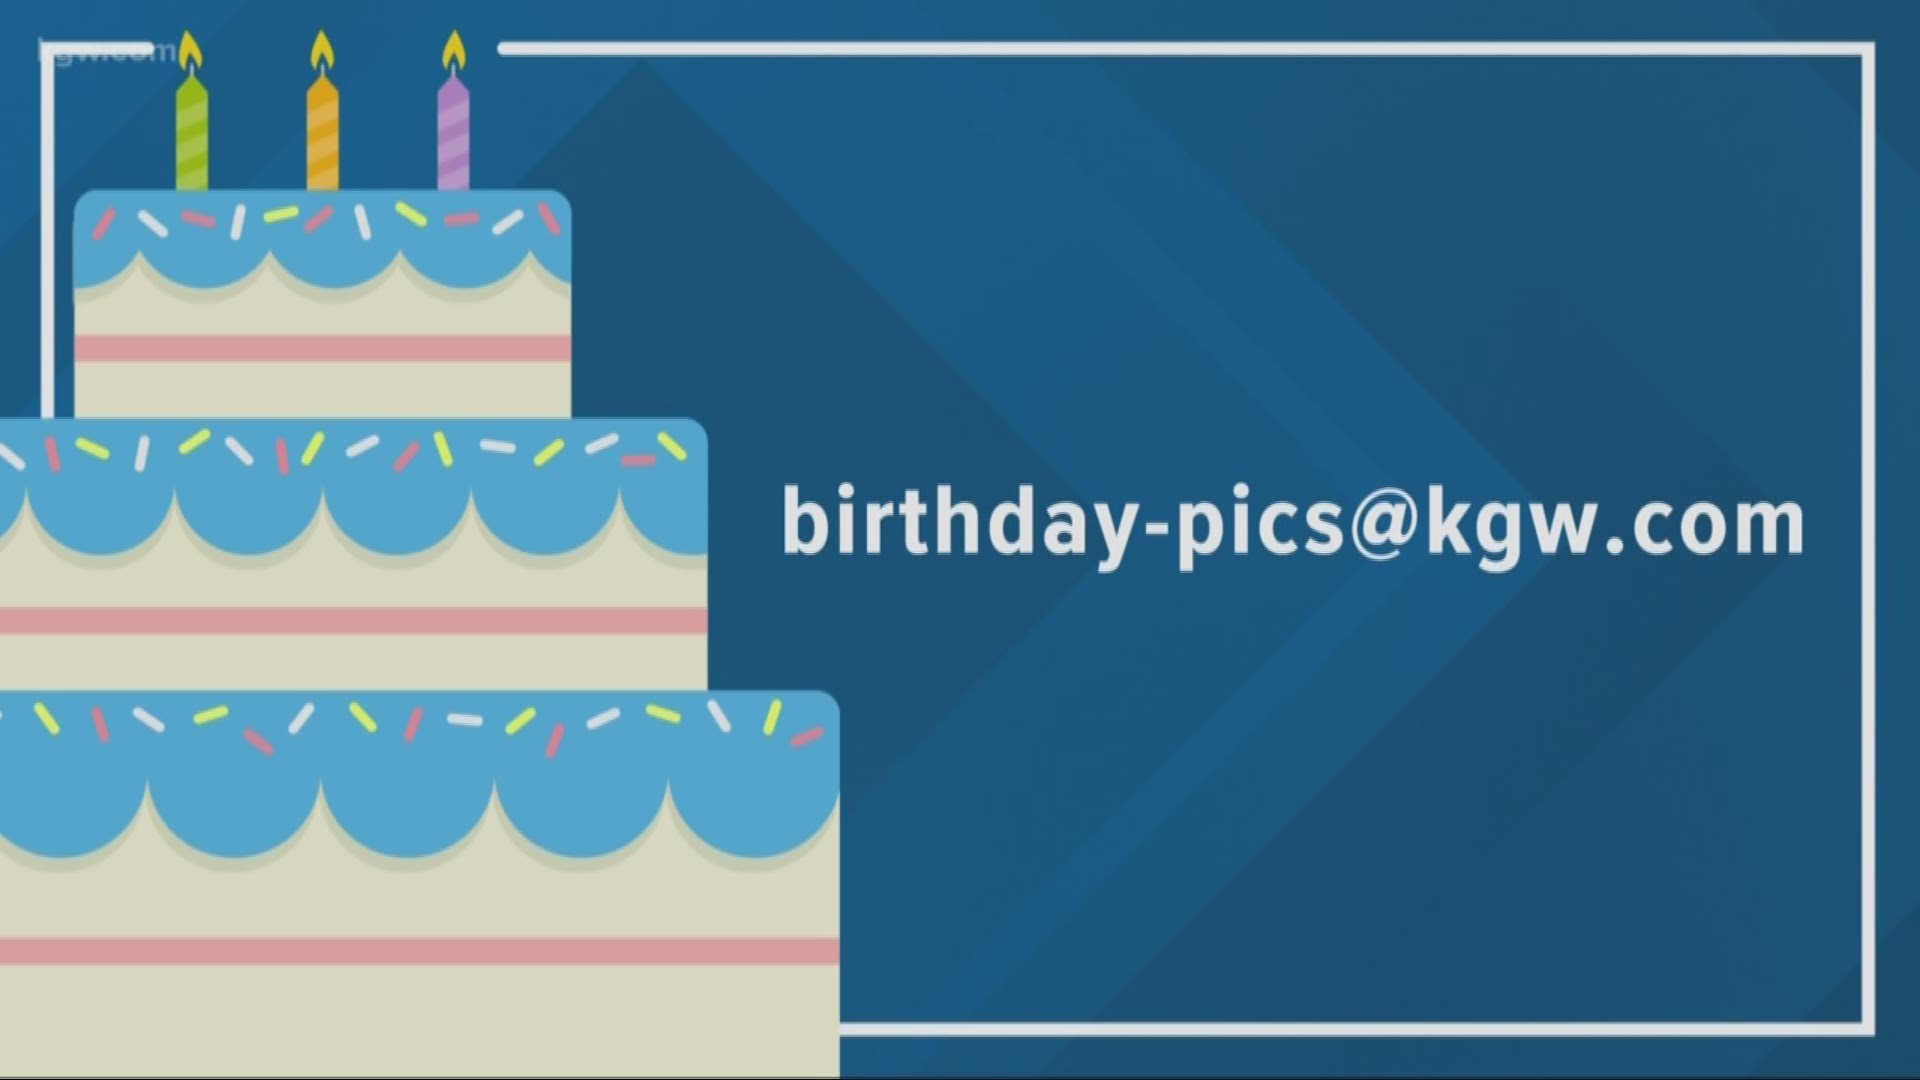 KGW viewer birthdays: 3-17-19